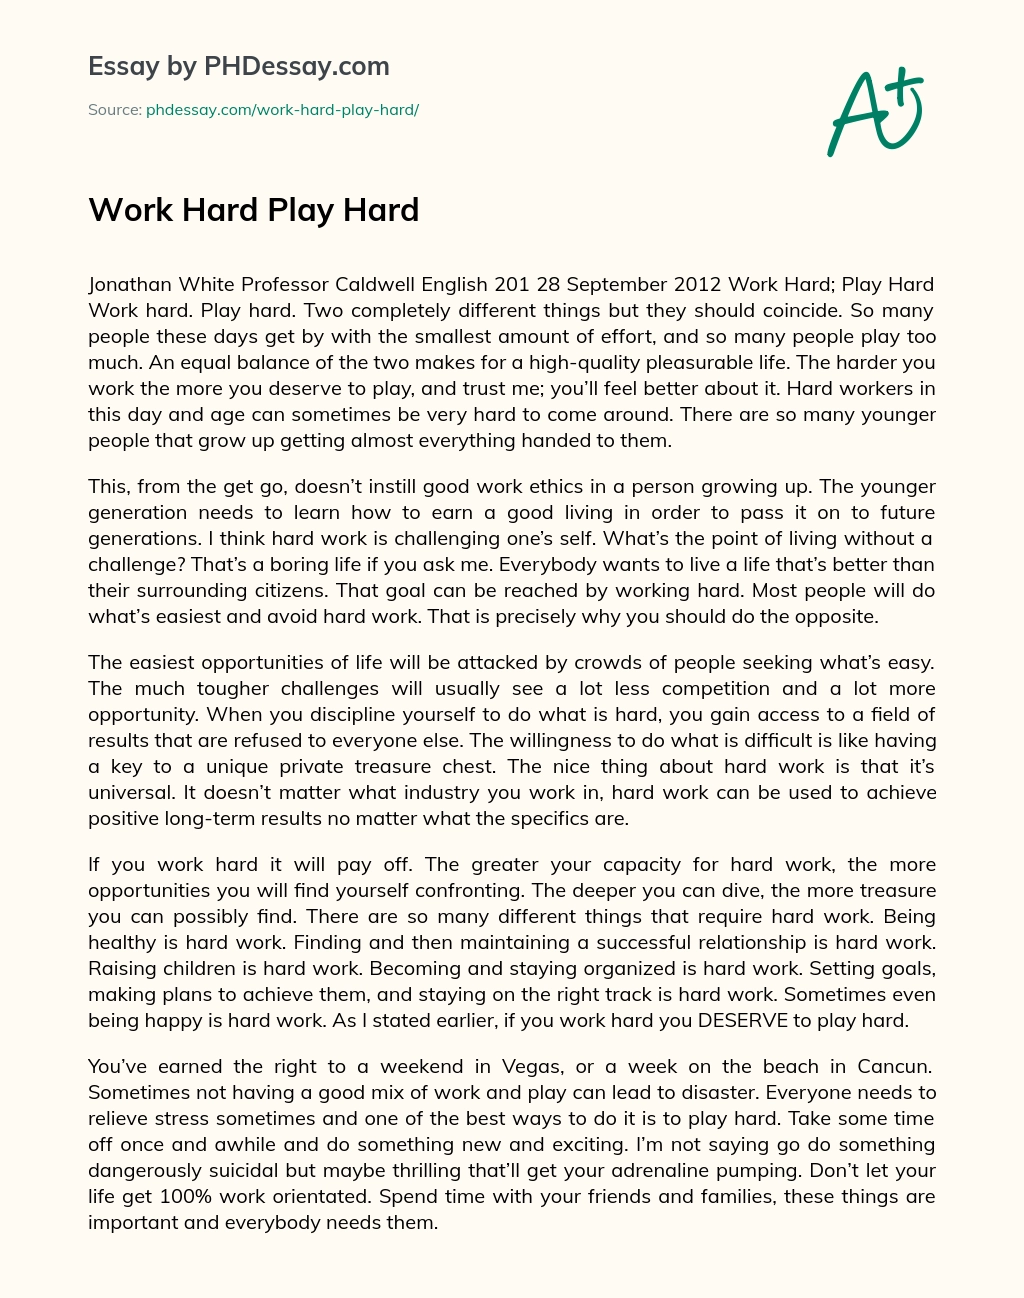 Work Hard Play Hard essay